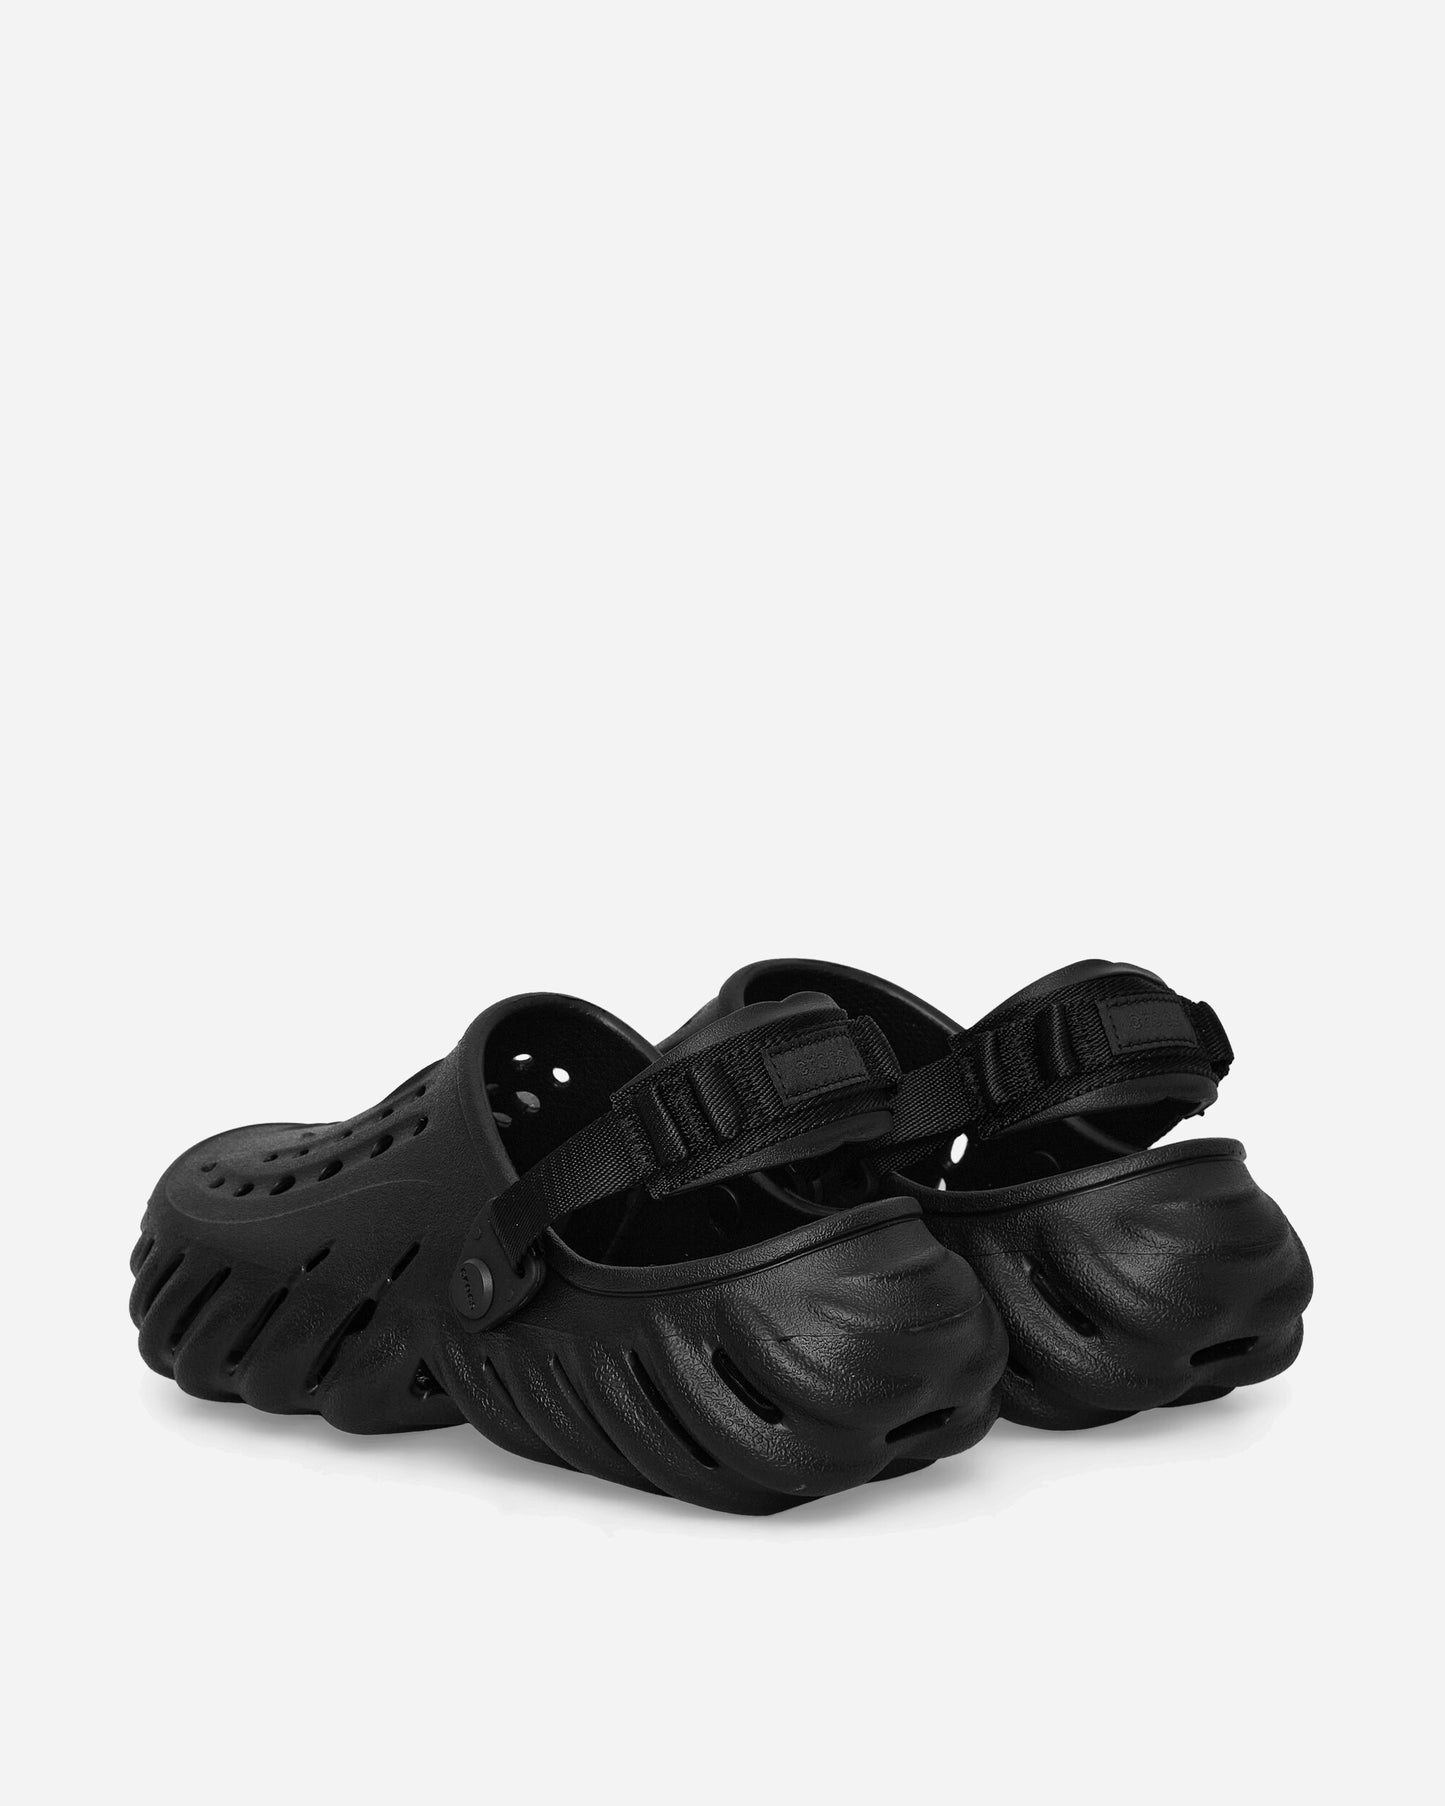 Crocs Crocs Echo Clog Black Sandals and Slides Sandals and Mules 207937W BLK